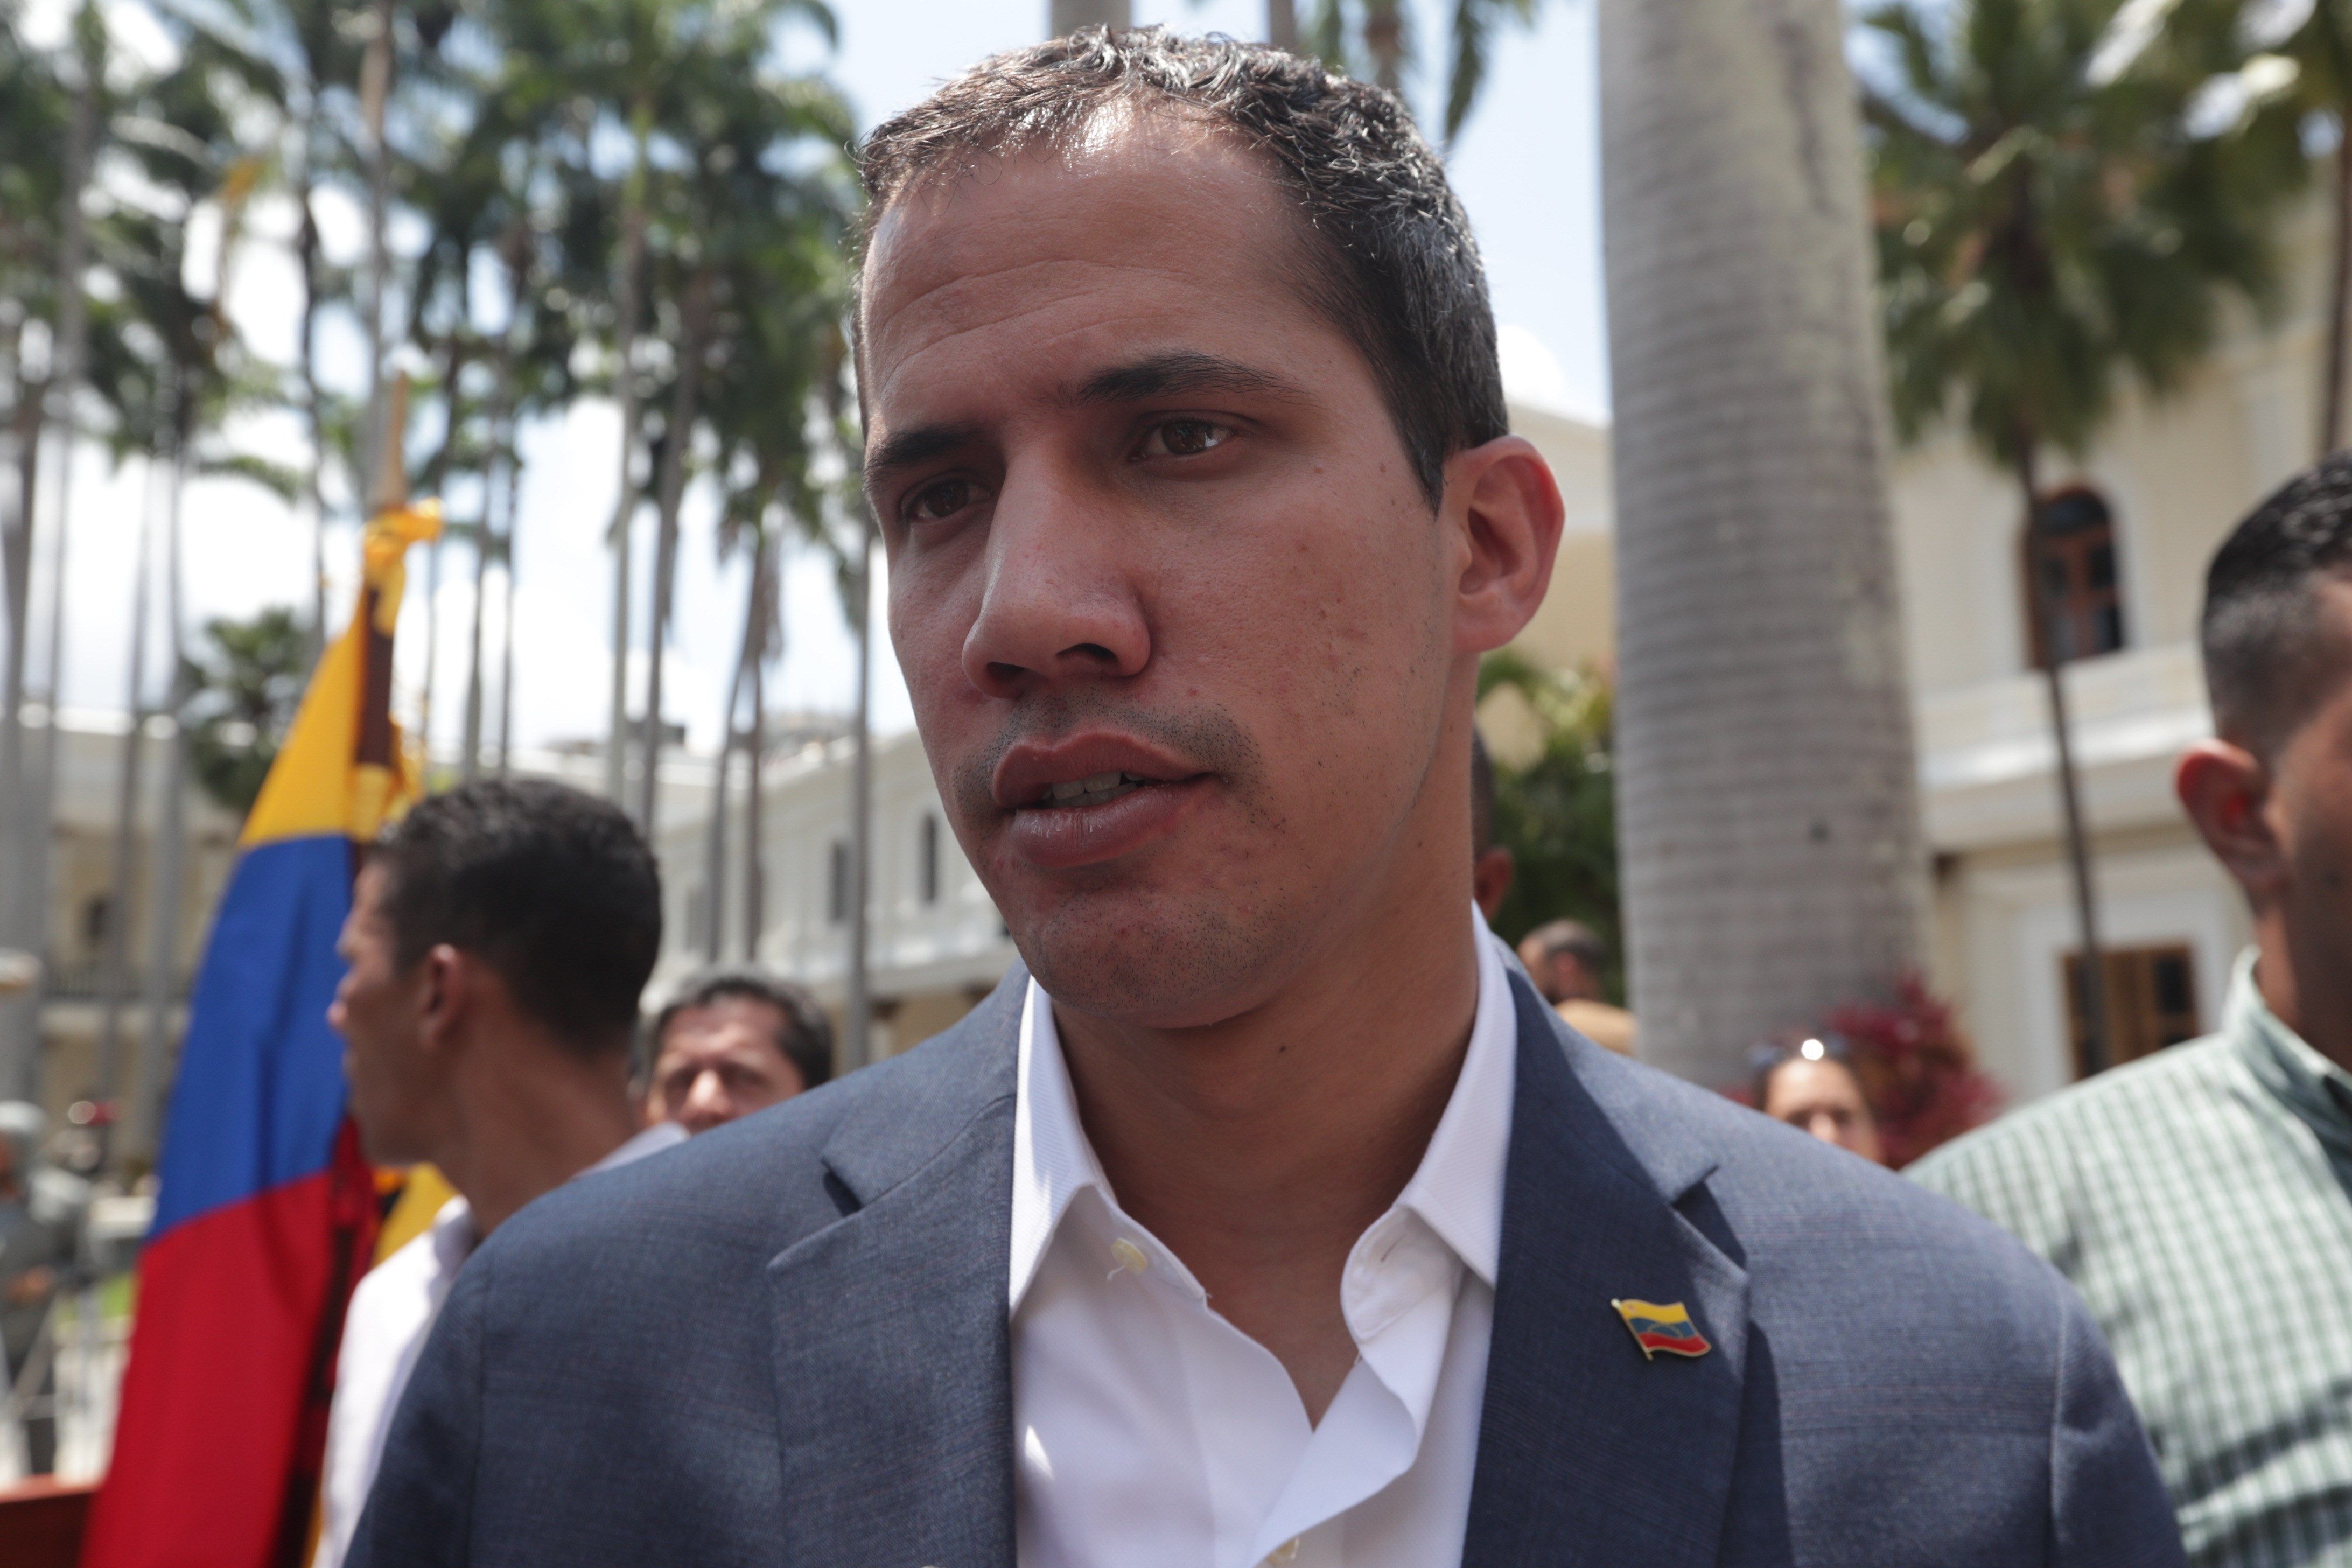  Guaidó invita a la marcha “más grande” el 1 de mayo para desalojar a Maduro